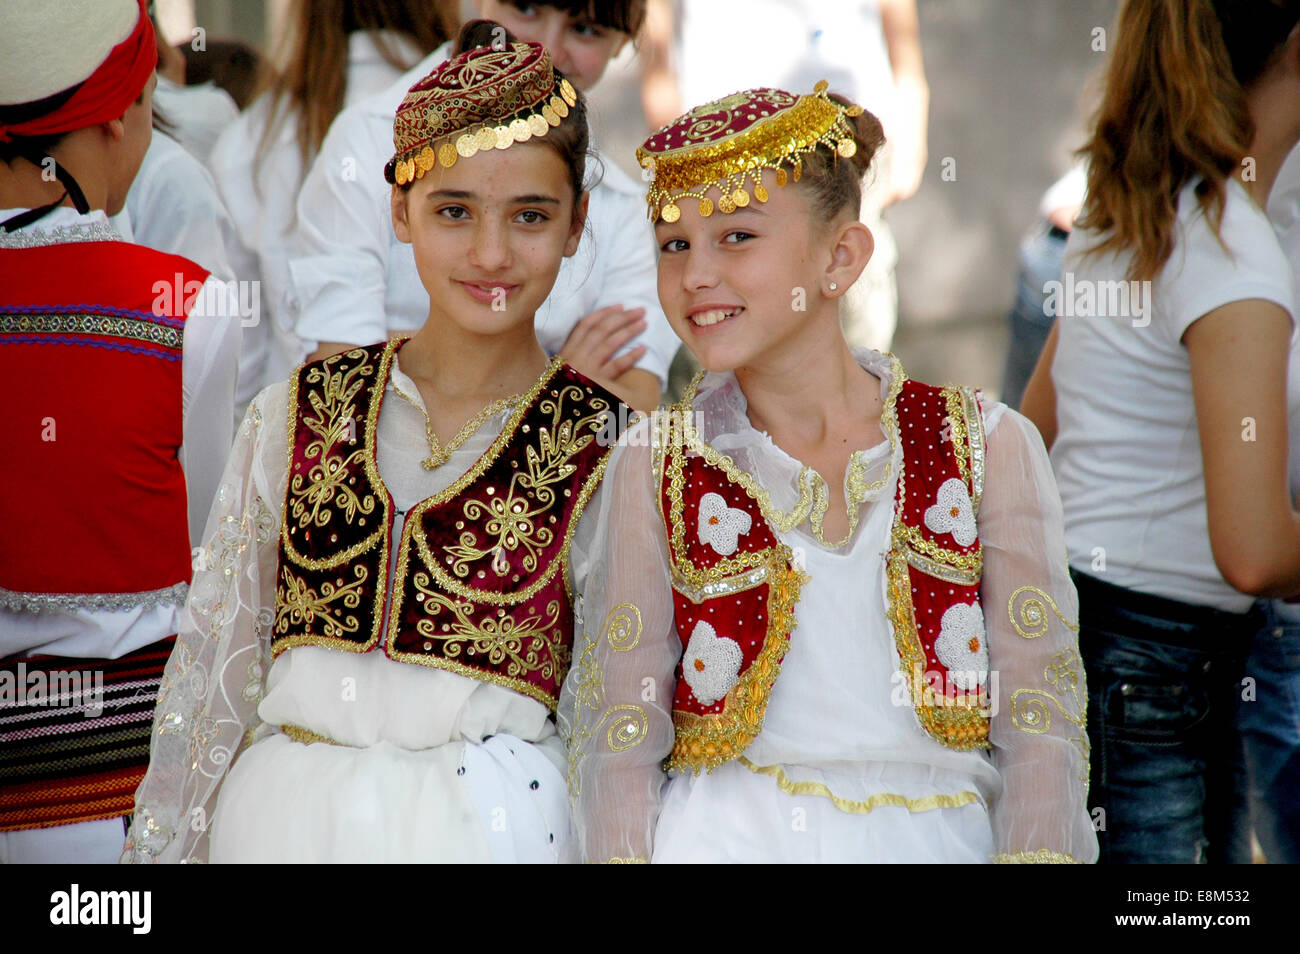 Costumi Tradizionali Albanesi Immagini e Fotos Stock - Alamy